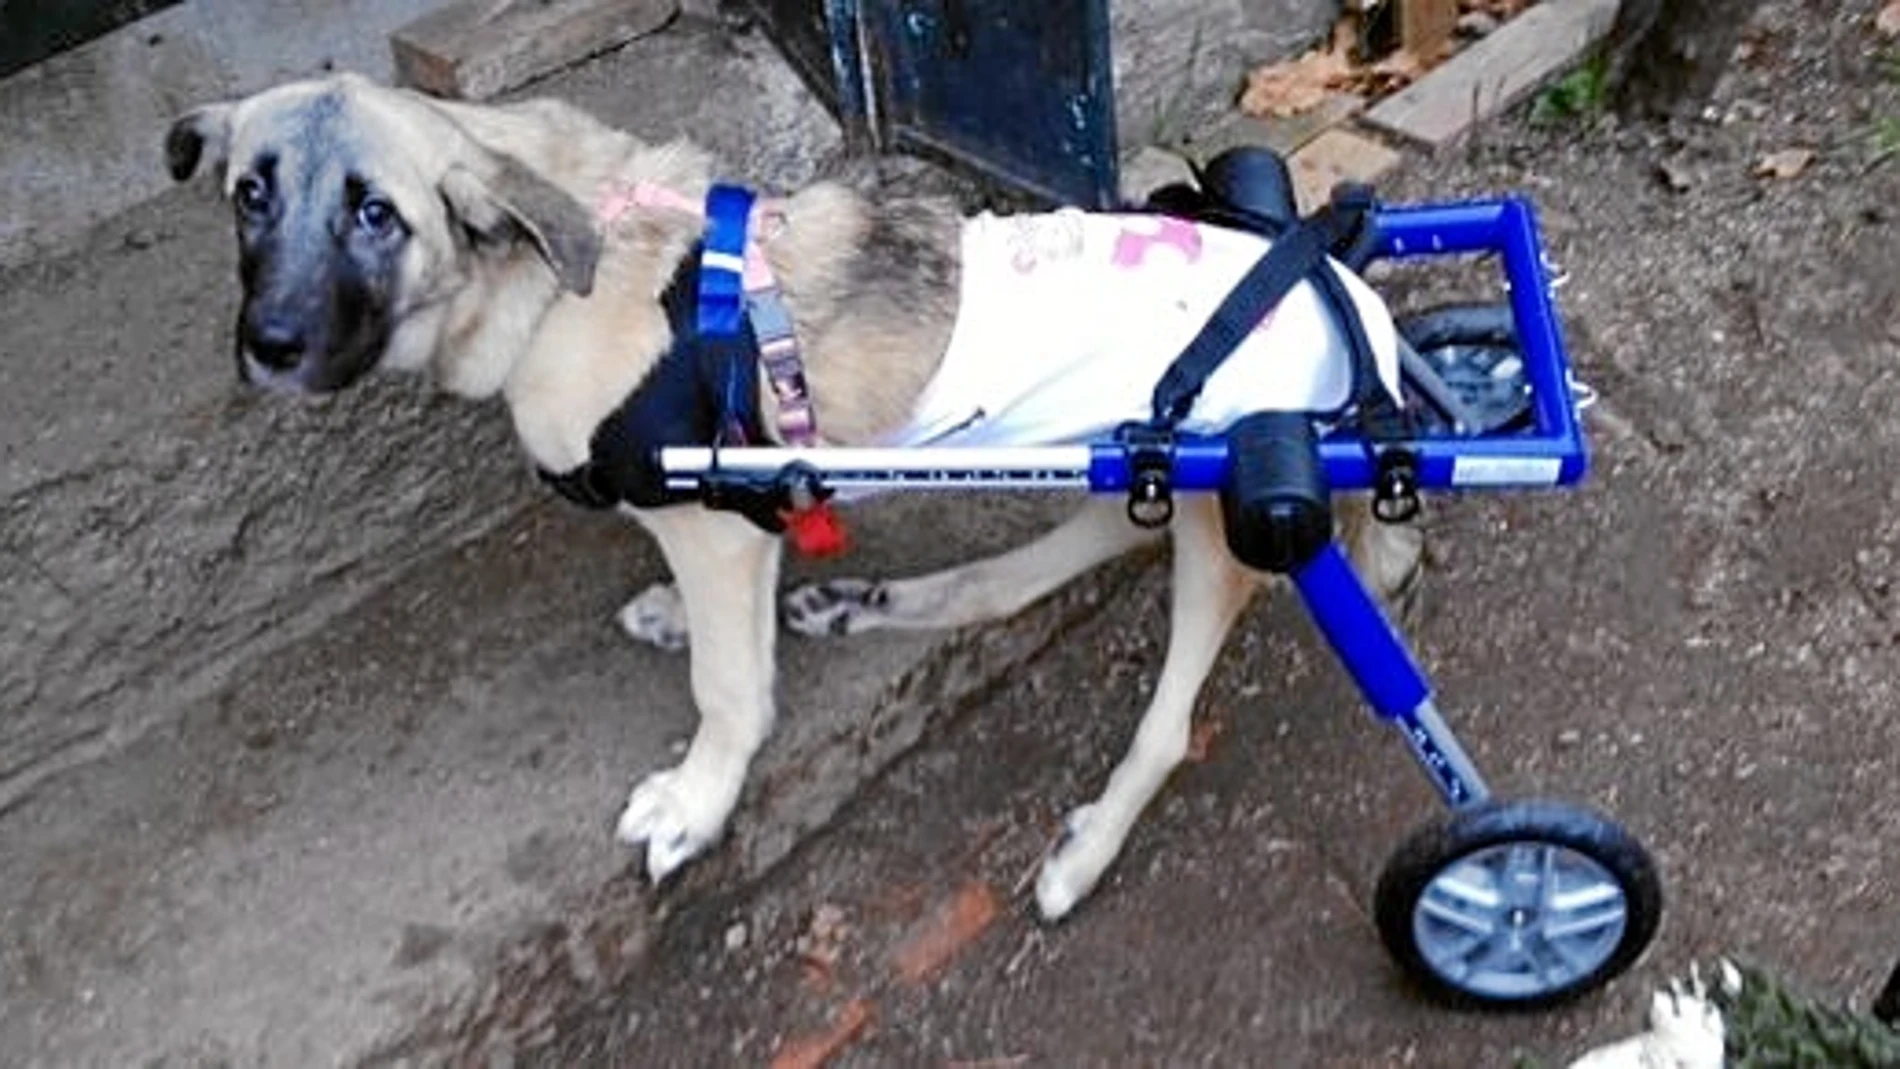 Verita camina desde hace una semana gracias a su nueva silla de ruedas enviada desde Barcelona